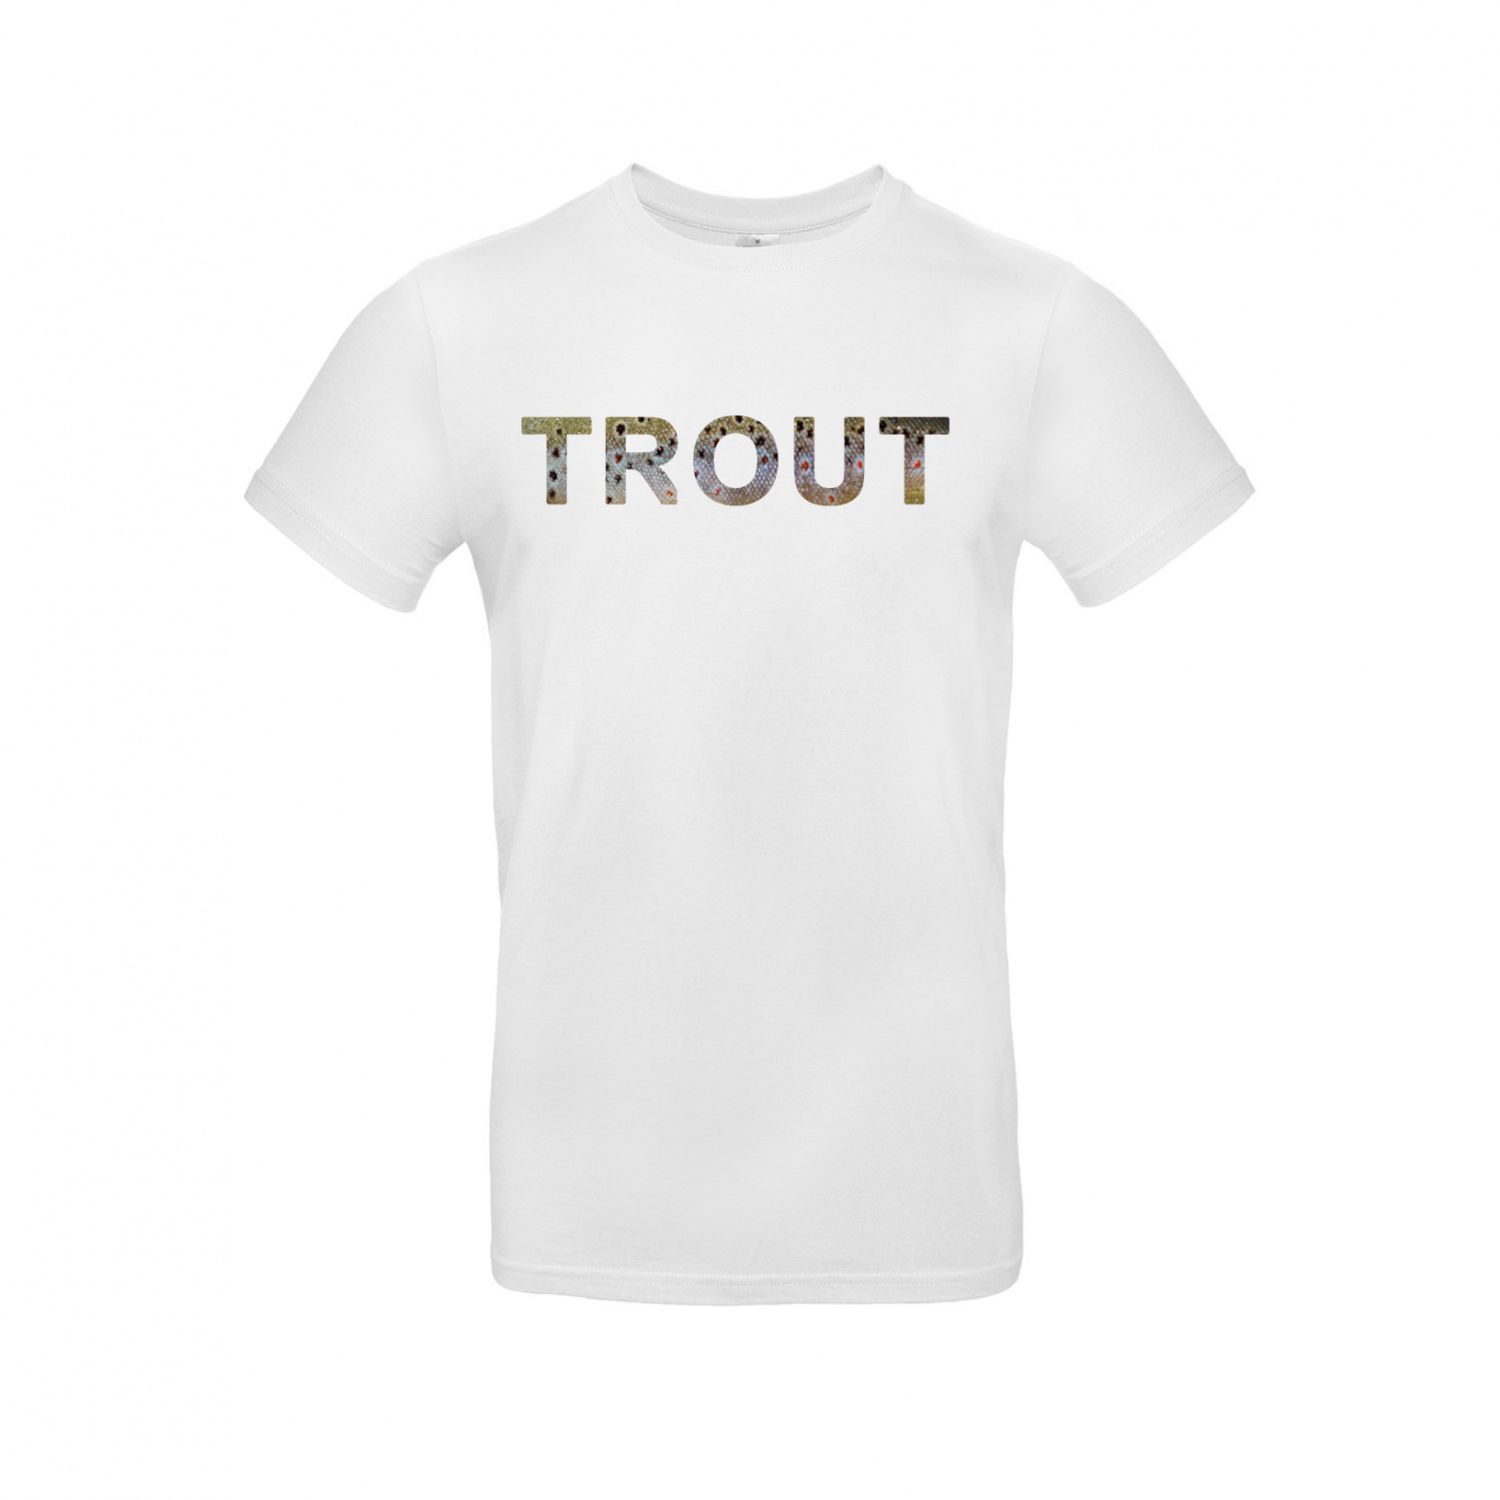 T-Shirt Trout (white)